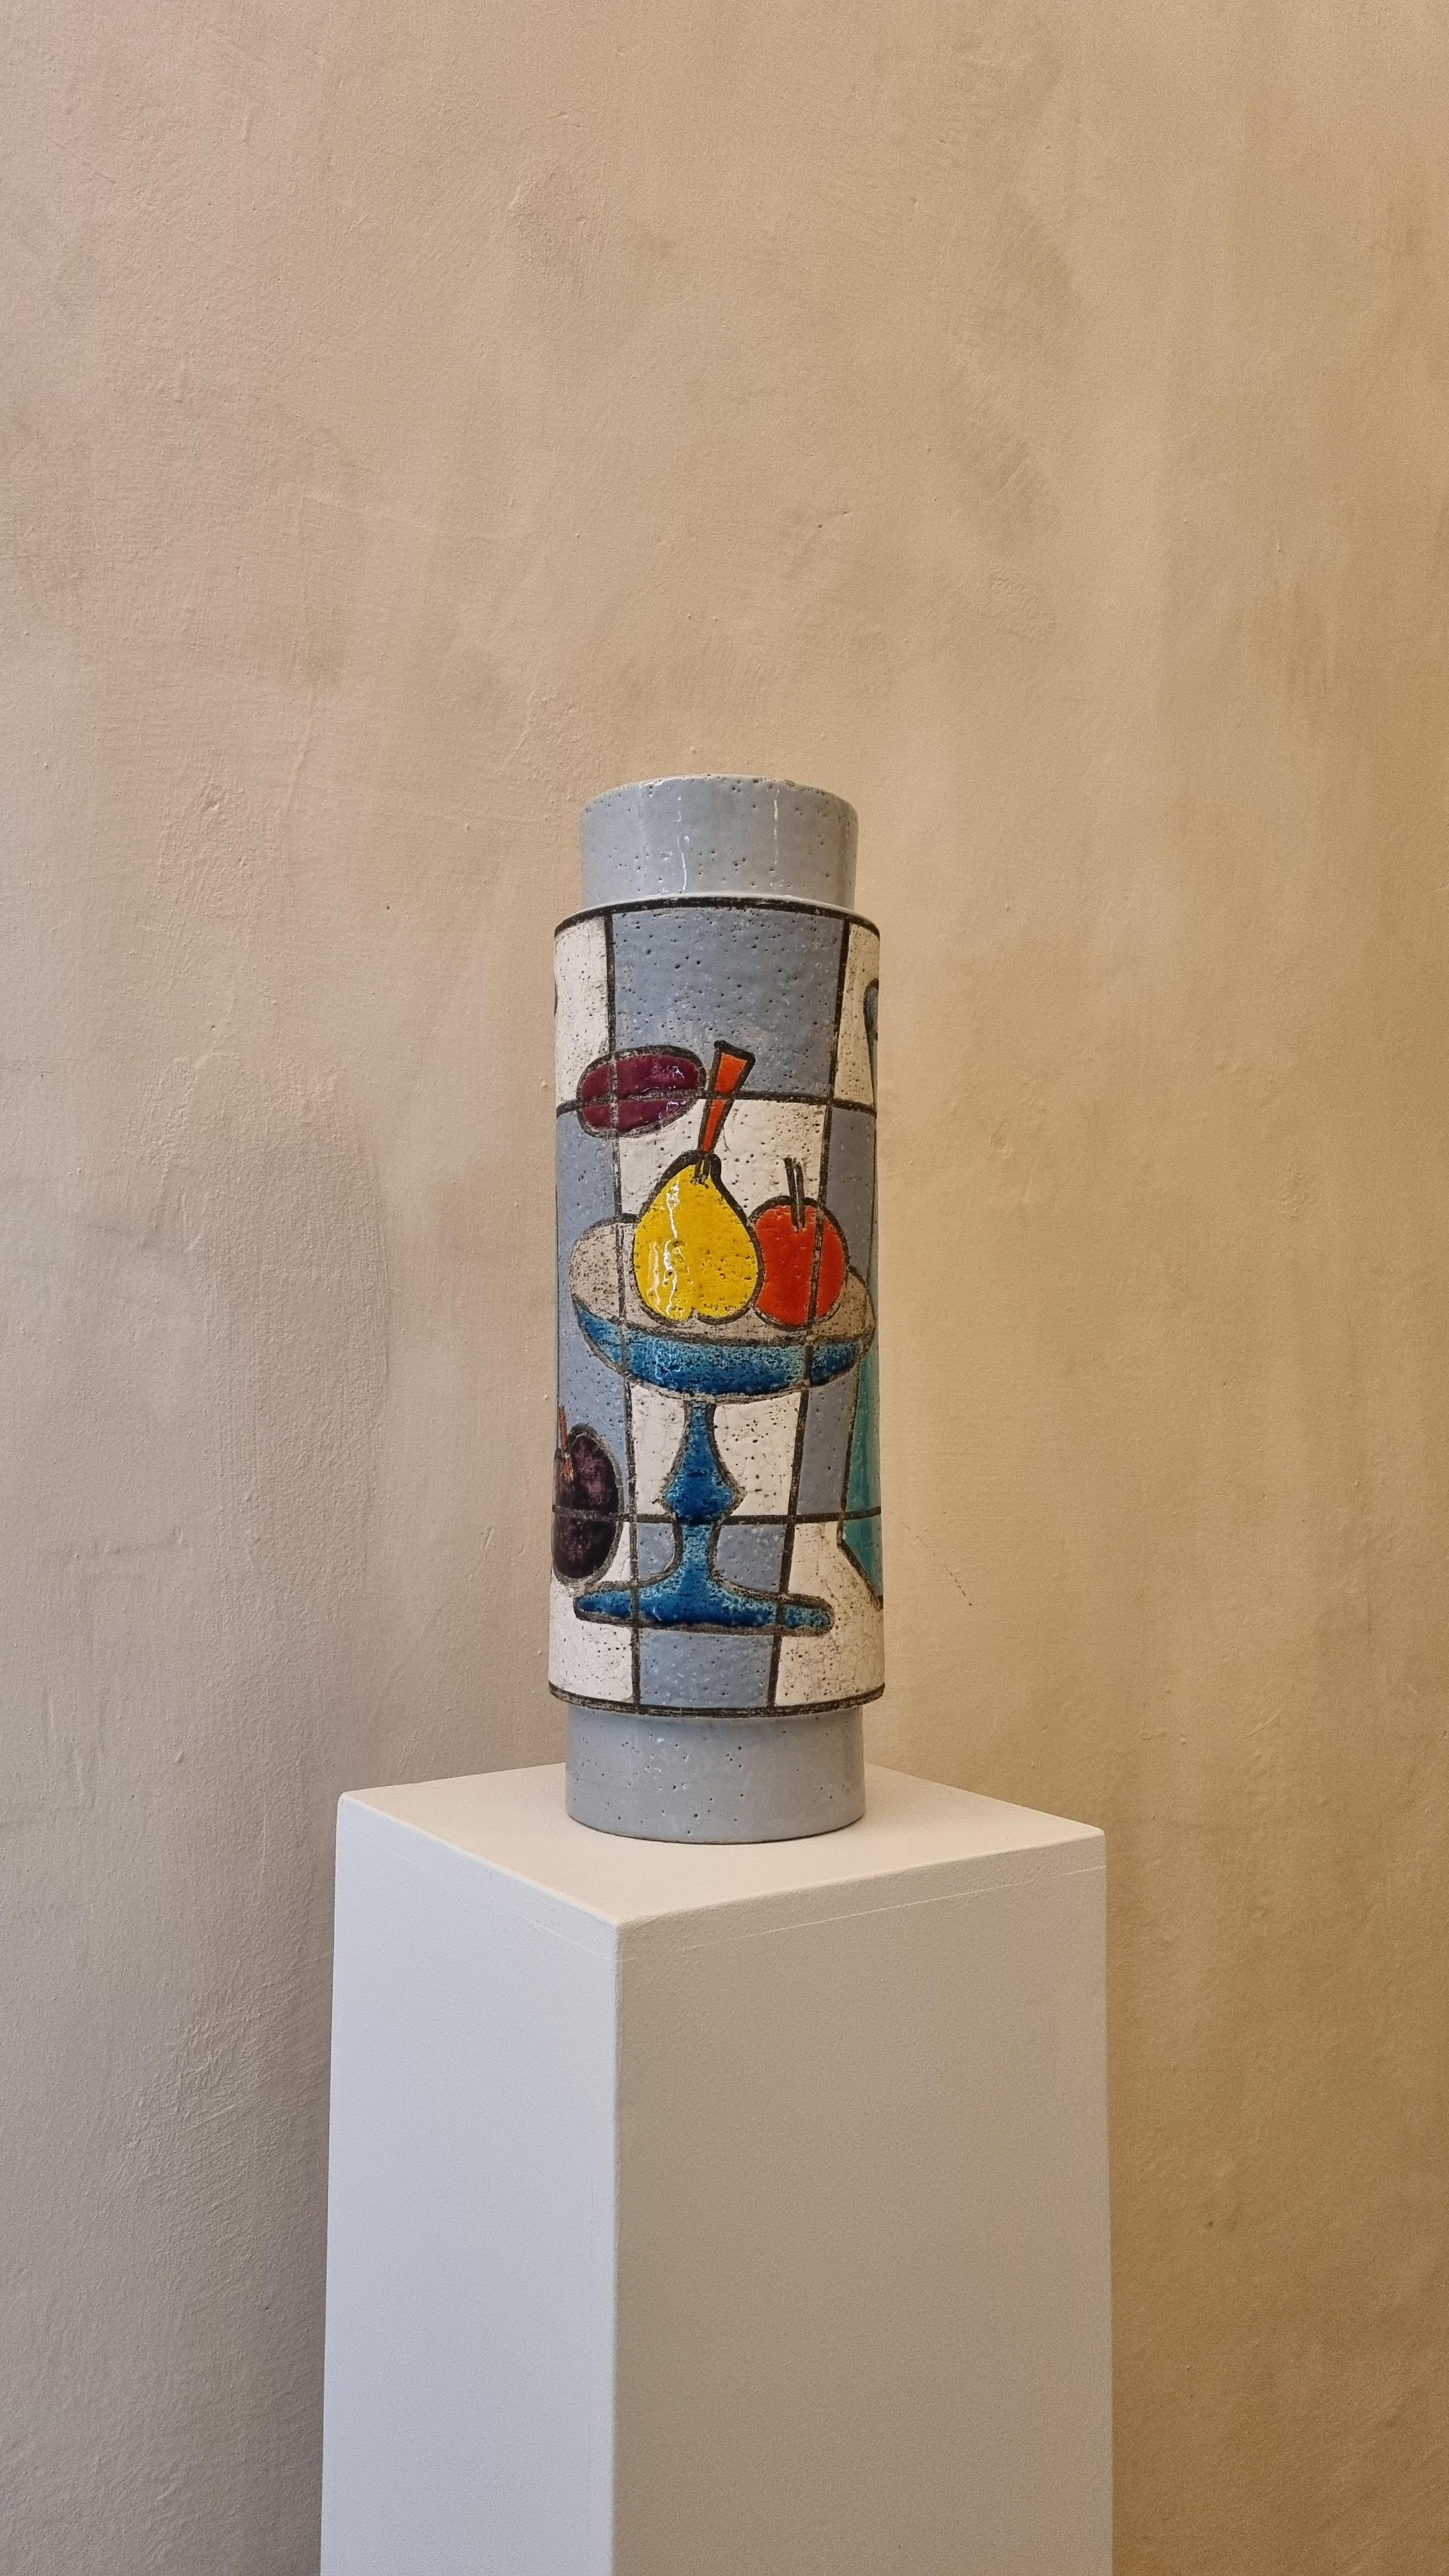 Keramische Lampenfassung von Aldo Londi für Ceramiche Bitossi Montelupo, 1970 .
Keramik glasiert, handbemalt, signiert.
Dieses seltene Modell  wurde in einer limitierten Serie von  stücke,
Jedes von Bitossi geschaffene Werk folgt einem sehr